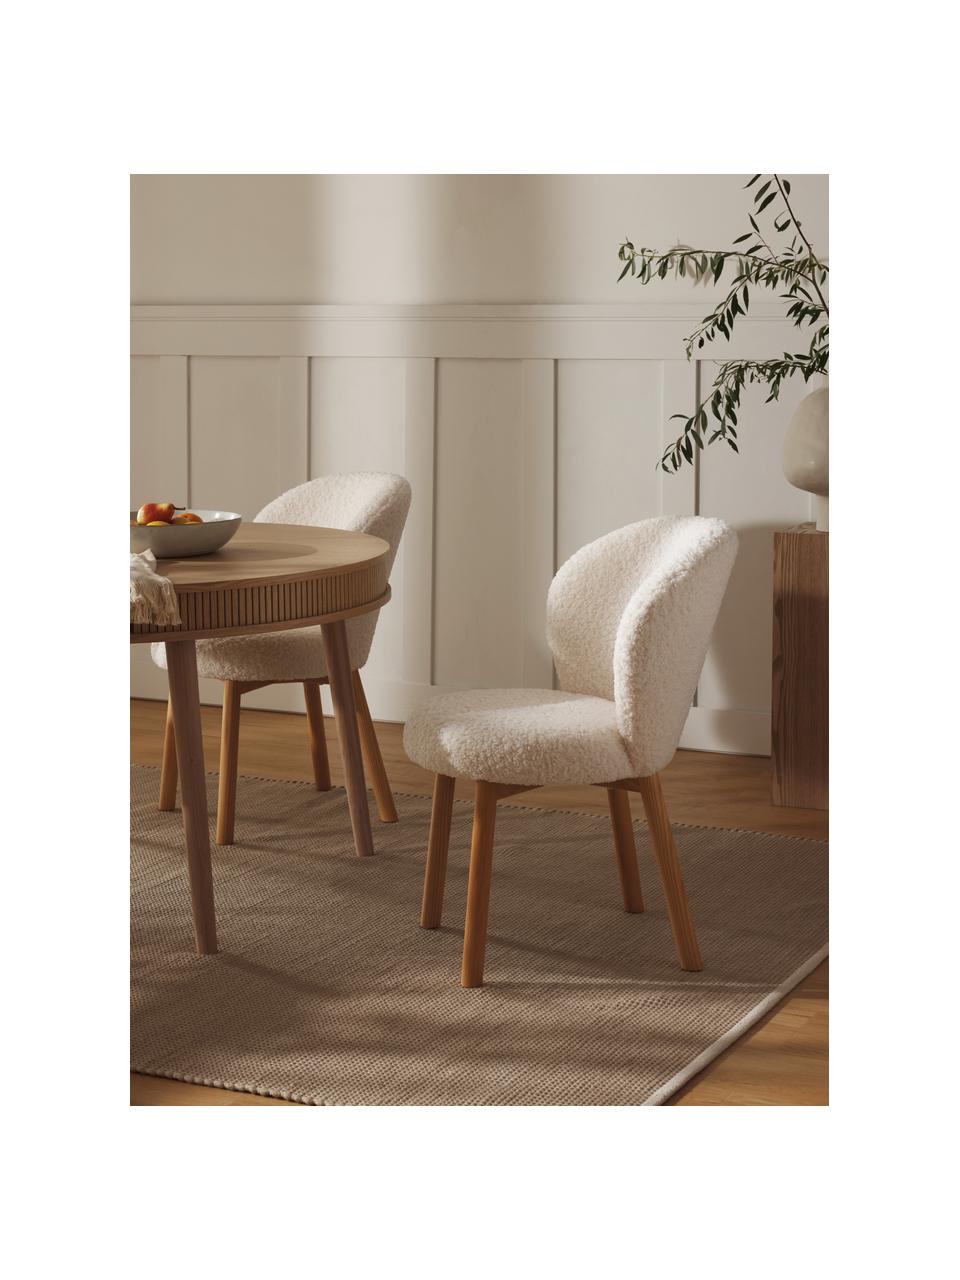 Čalouněná židle Serena, Bílá, jasanové dřevo, Š 56 cm, H 64 cm